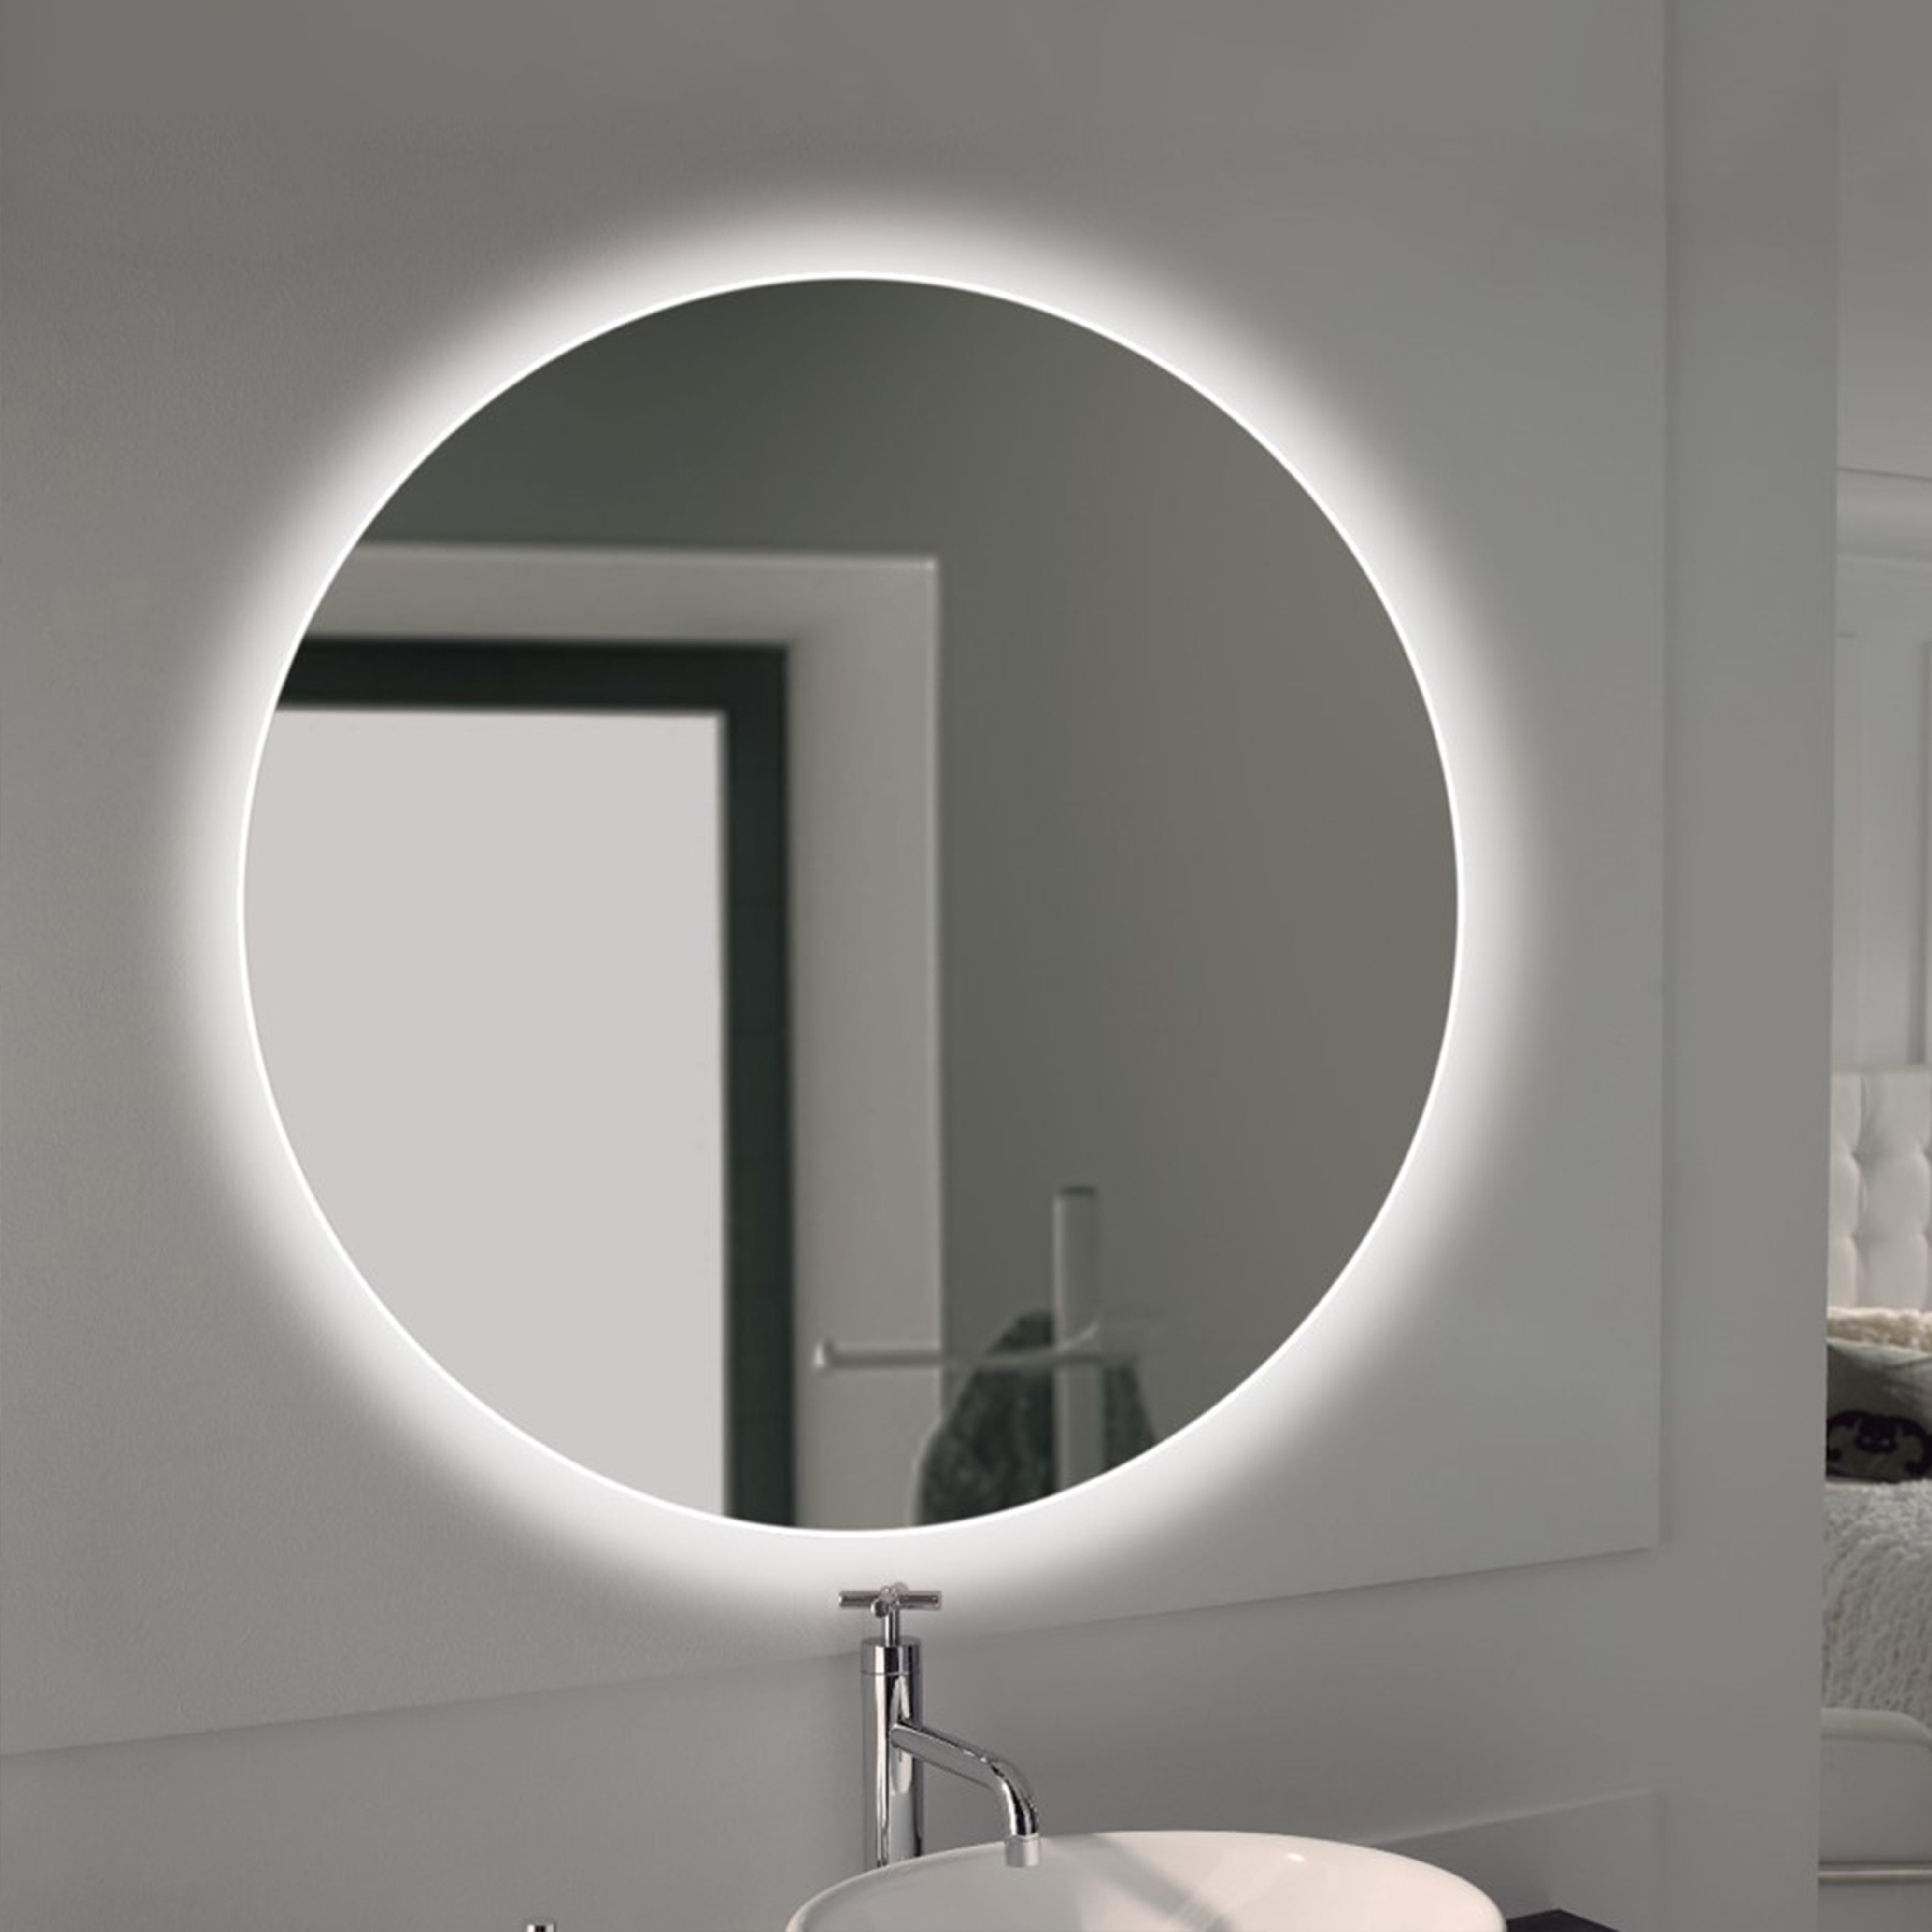  Miroir de salle de bain Cassiopeia avec eclairage decoratif a LED, diametre 60 cm, AC 230V 50Hz, 20 W + 12 W, Aluminium et Verre.